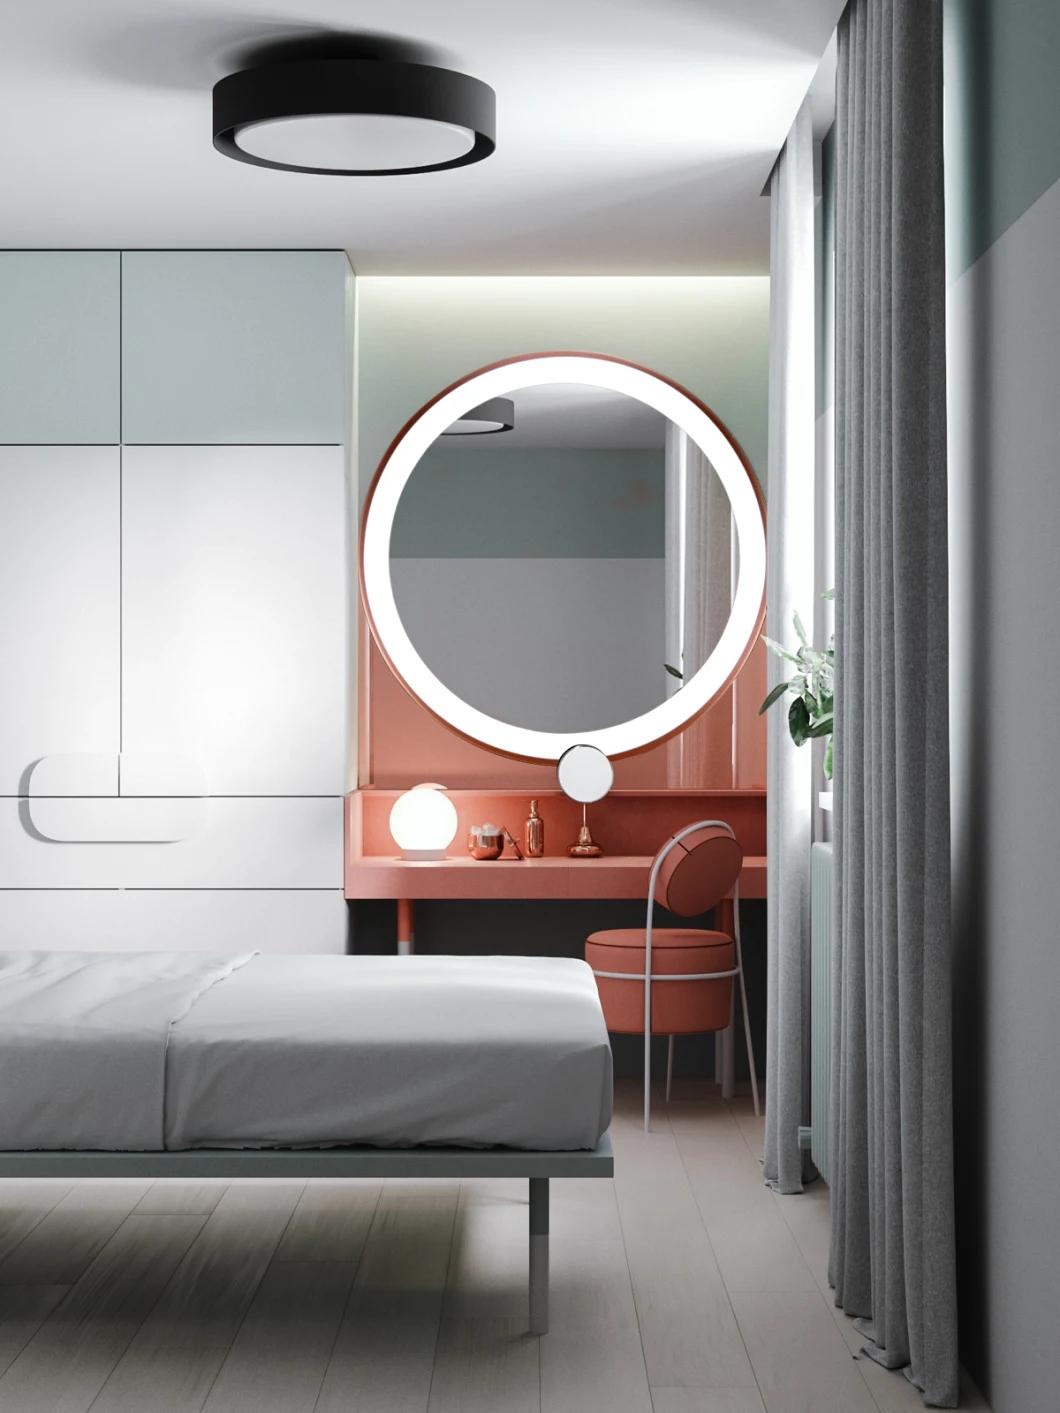 Round Shape LED Customized Size and Frame Illuminate Bathroom Mirror